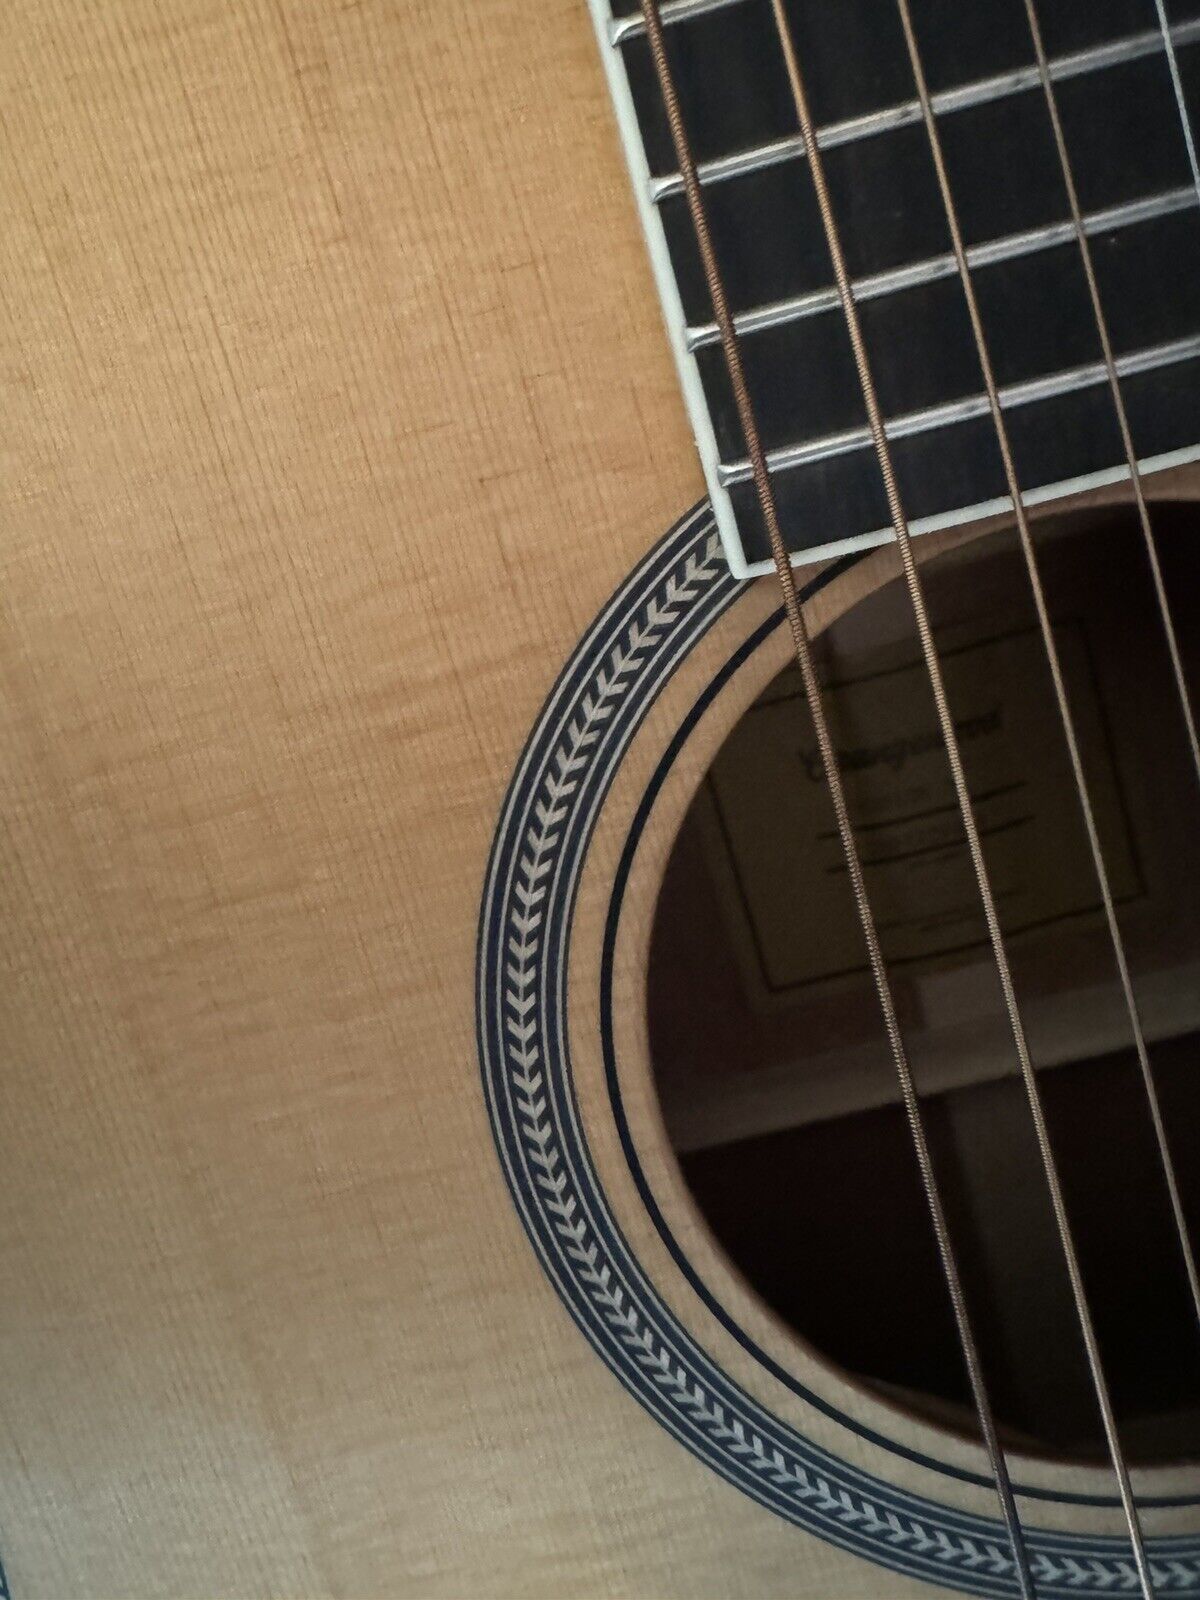 Yamaha FG260 12 String Acoustic Guitar *(LOCAL PICKUP)* 10